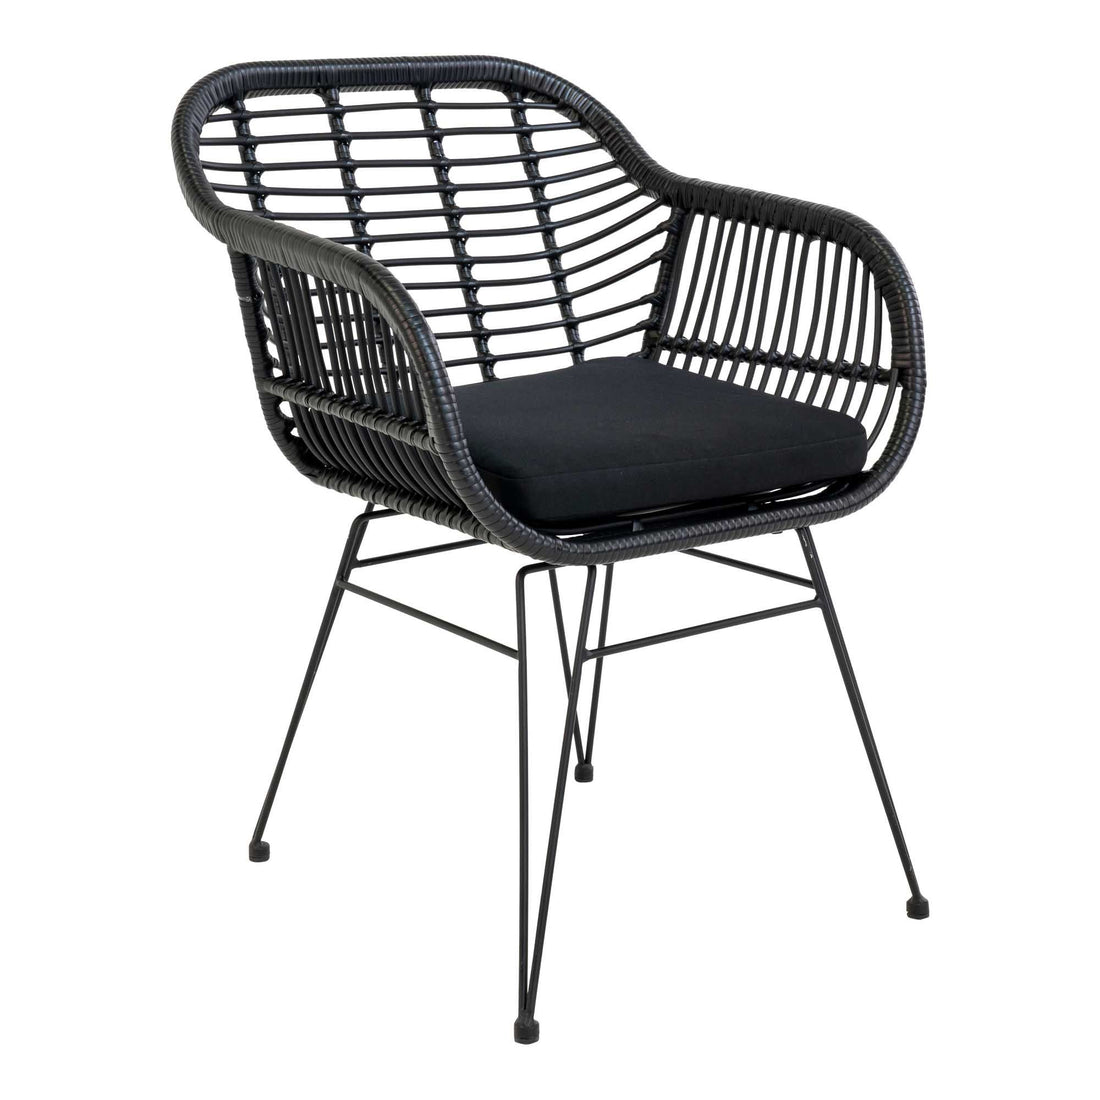 Trieste chair - chair in black polyrattan with cushion - 2 - pcs